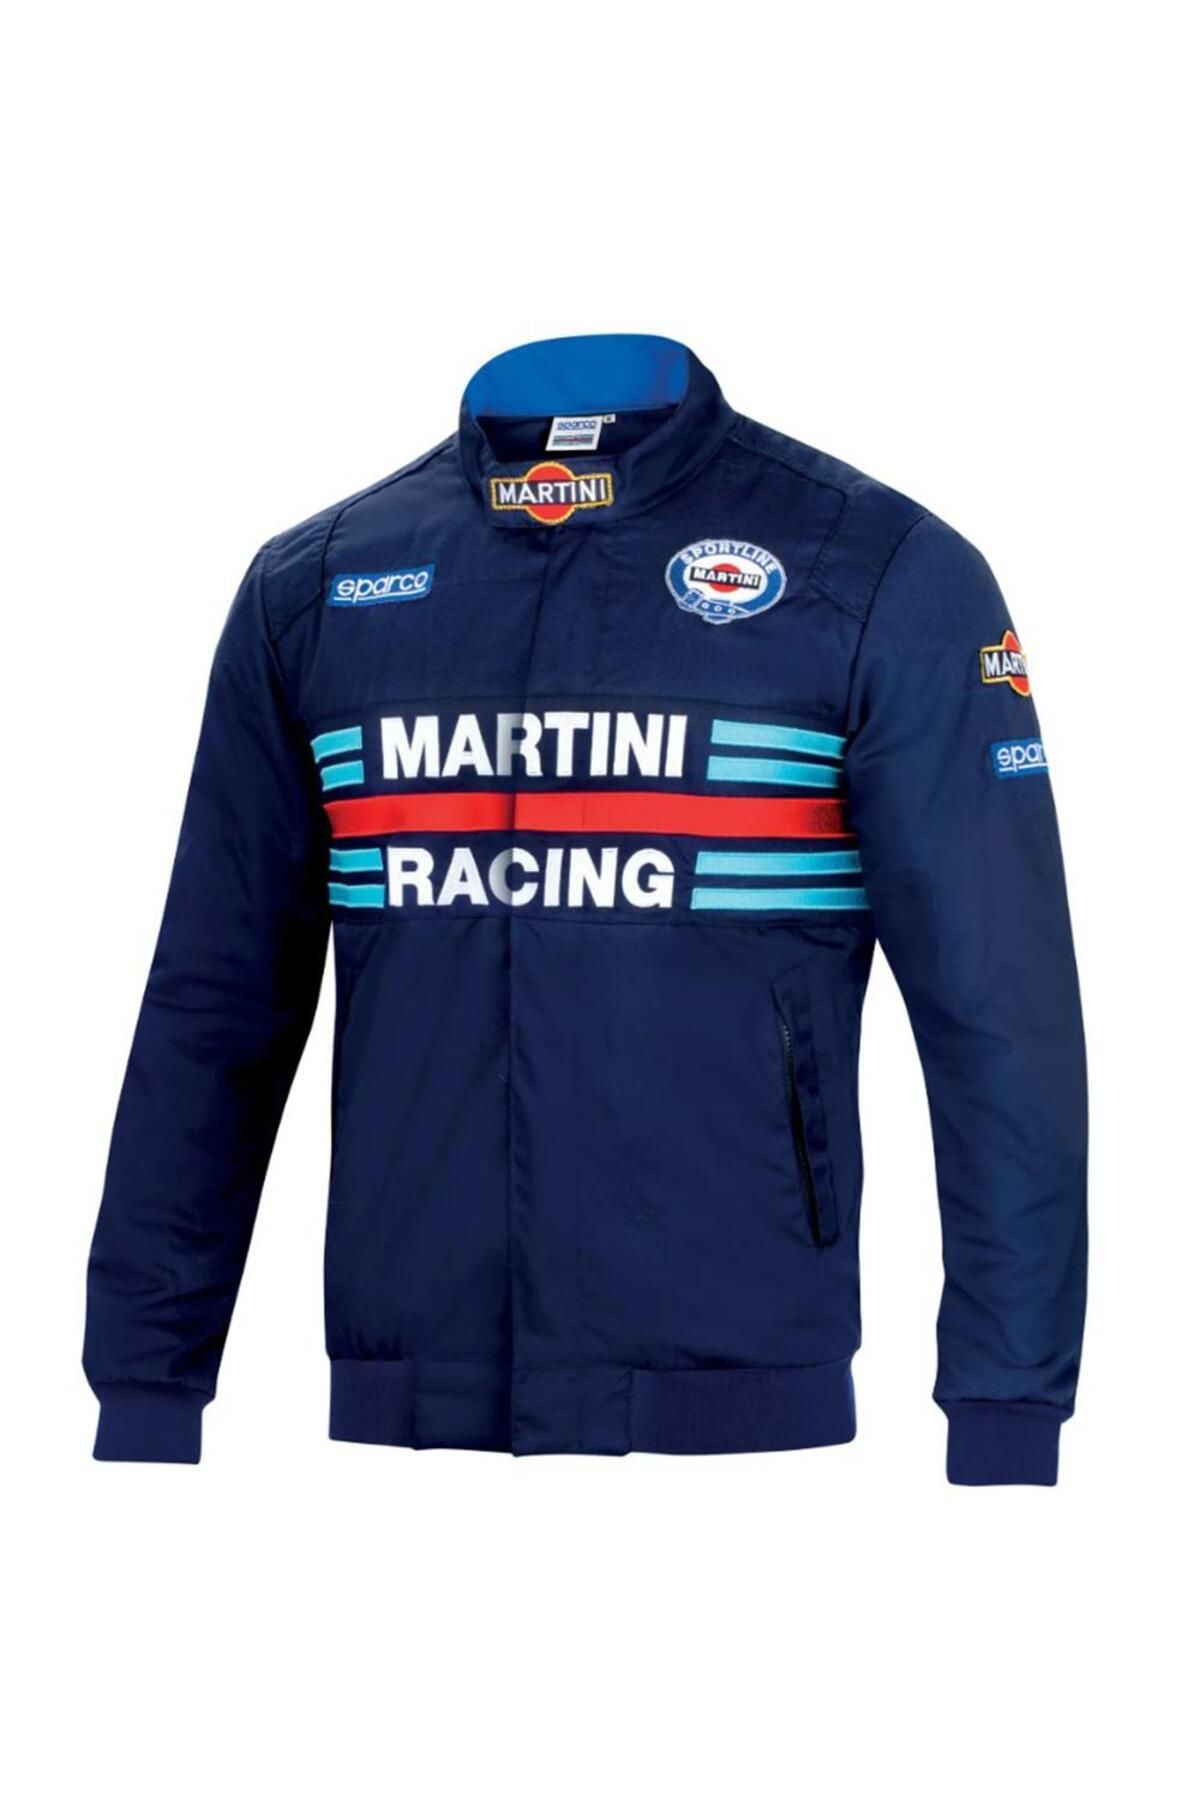 Sparco Martini Racing Boomber Ceket Lacivert S Beden